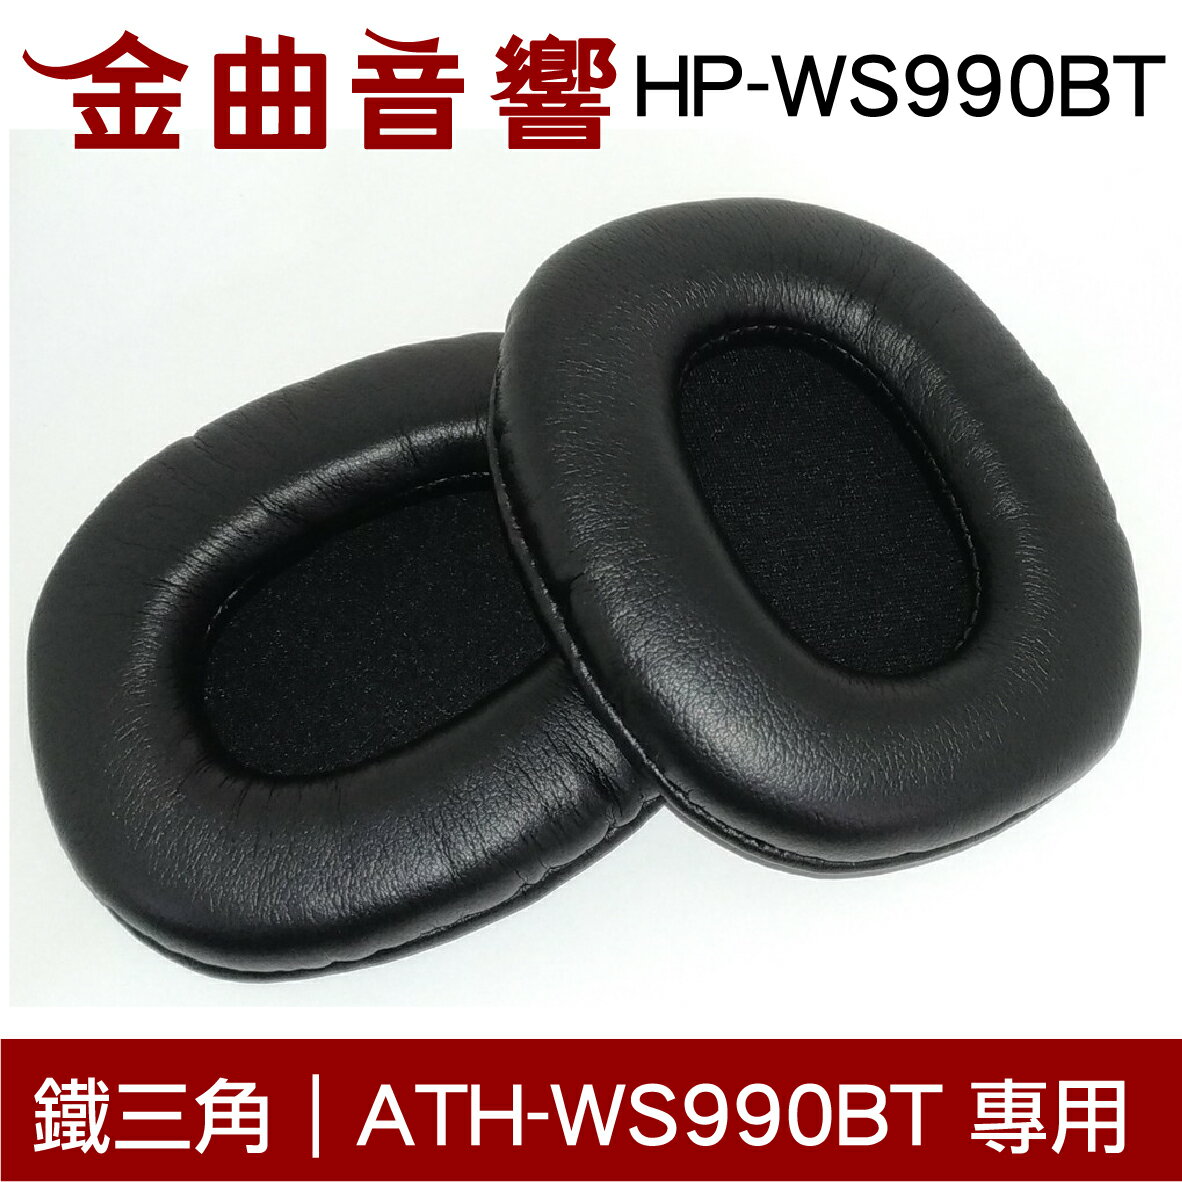 鐵三角 HP-WS990BT 替換耳罩 ATH-WS990BT 專用 | 金曲音響